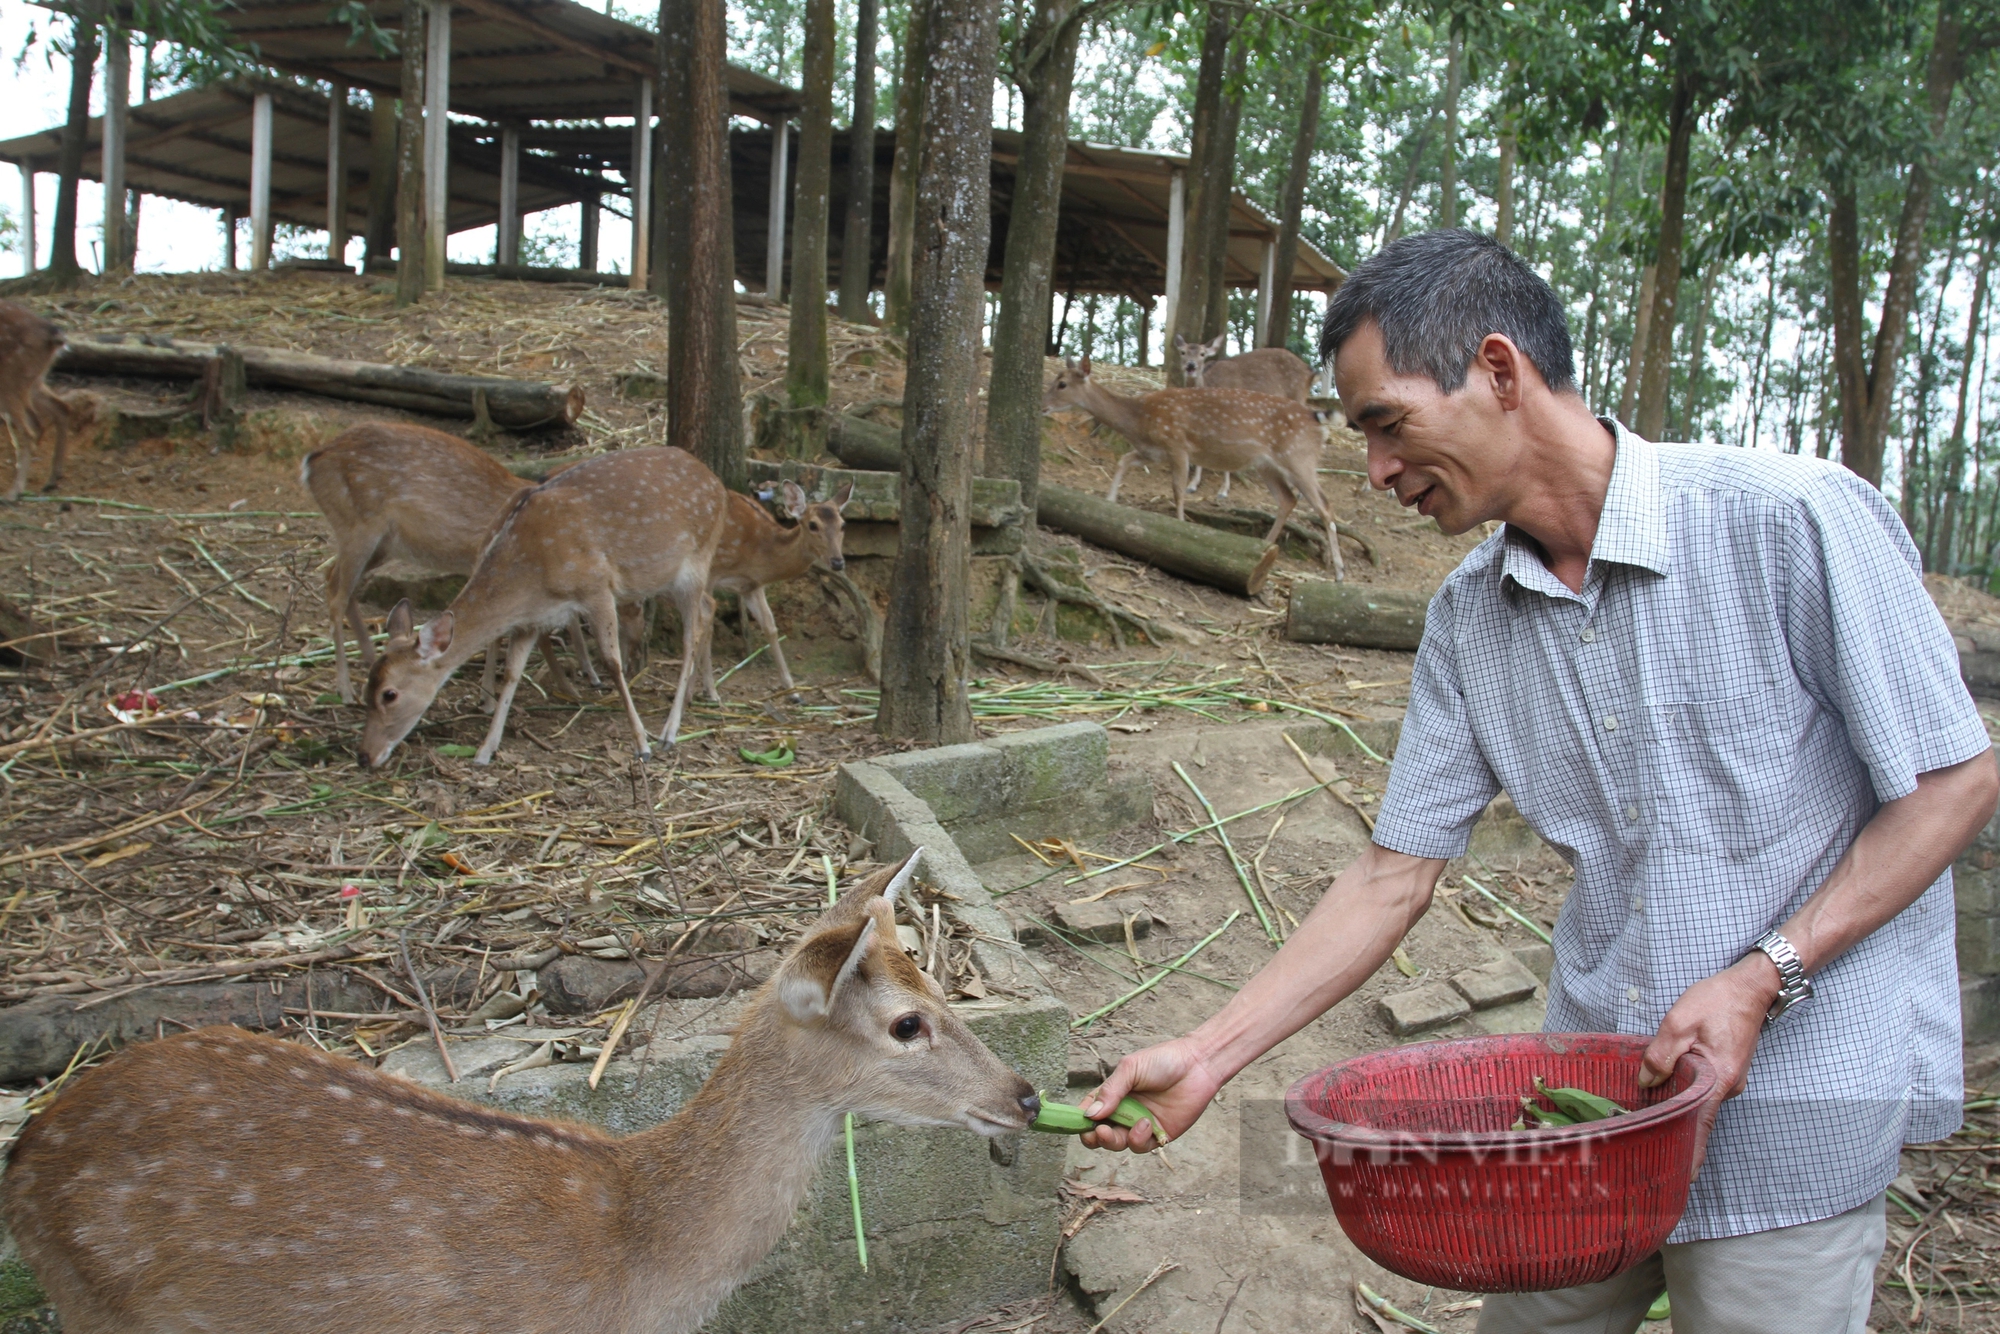 Thả trên đồi con vật có nguồn gốc động vật hoang dã, ông nông dân Thái Nguyên tự hưởng lương cao- Ảnh 10.